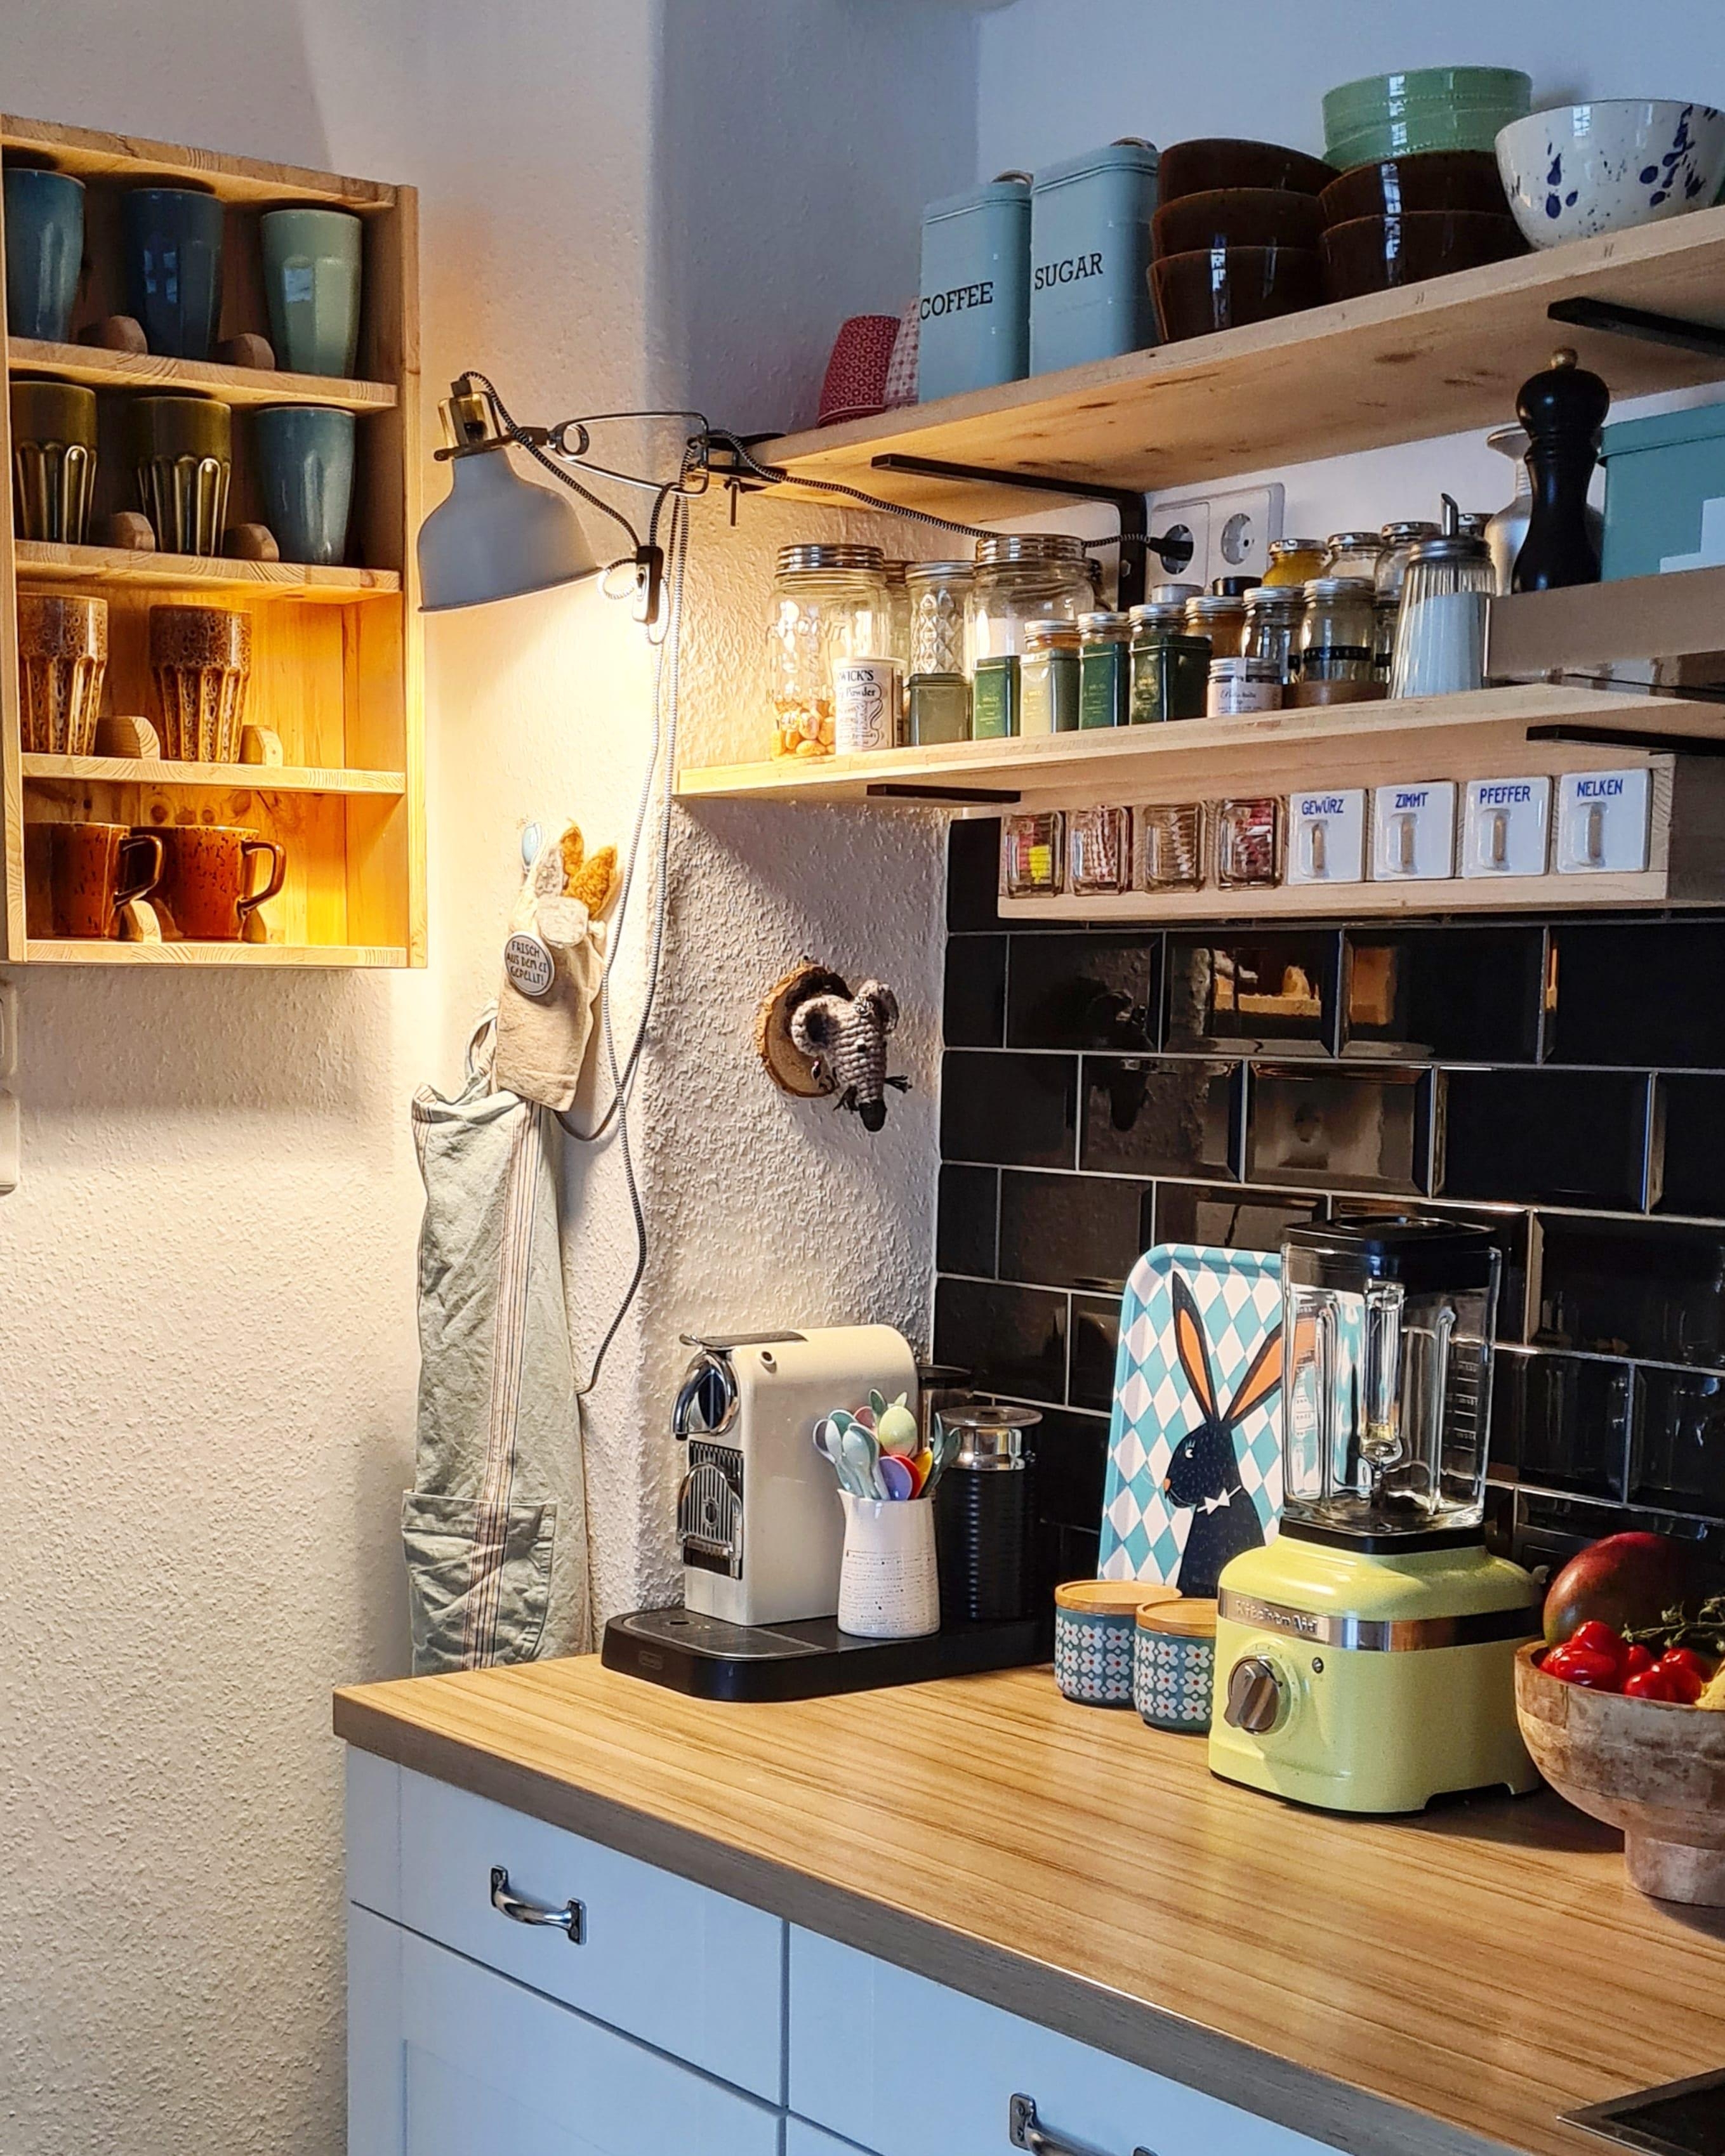 #tassenregal #diy #Küche #vintage #upcycling #farbenfroh #geschirrliebe #Geschirr #Kaffeepötte #metrofliesen #delonghi #kitchenaid